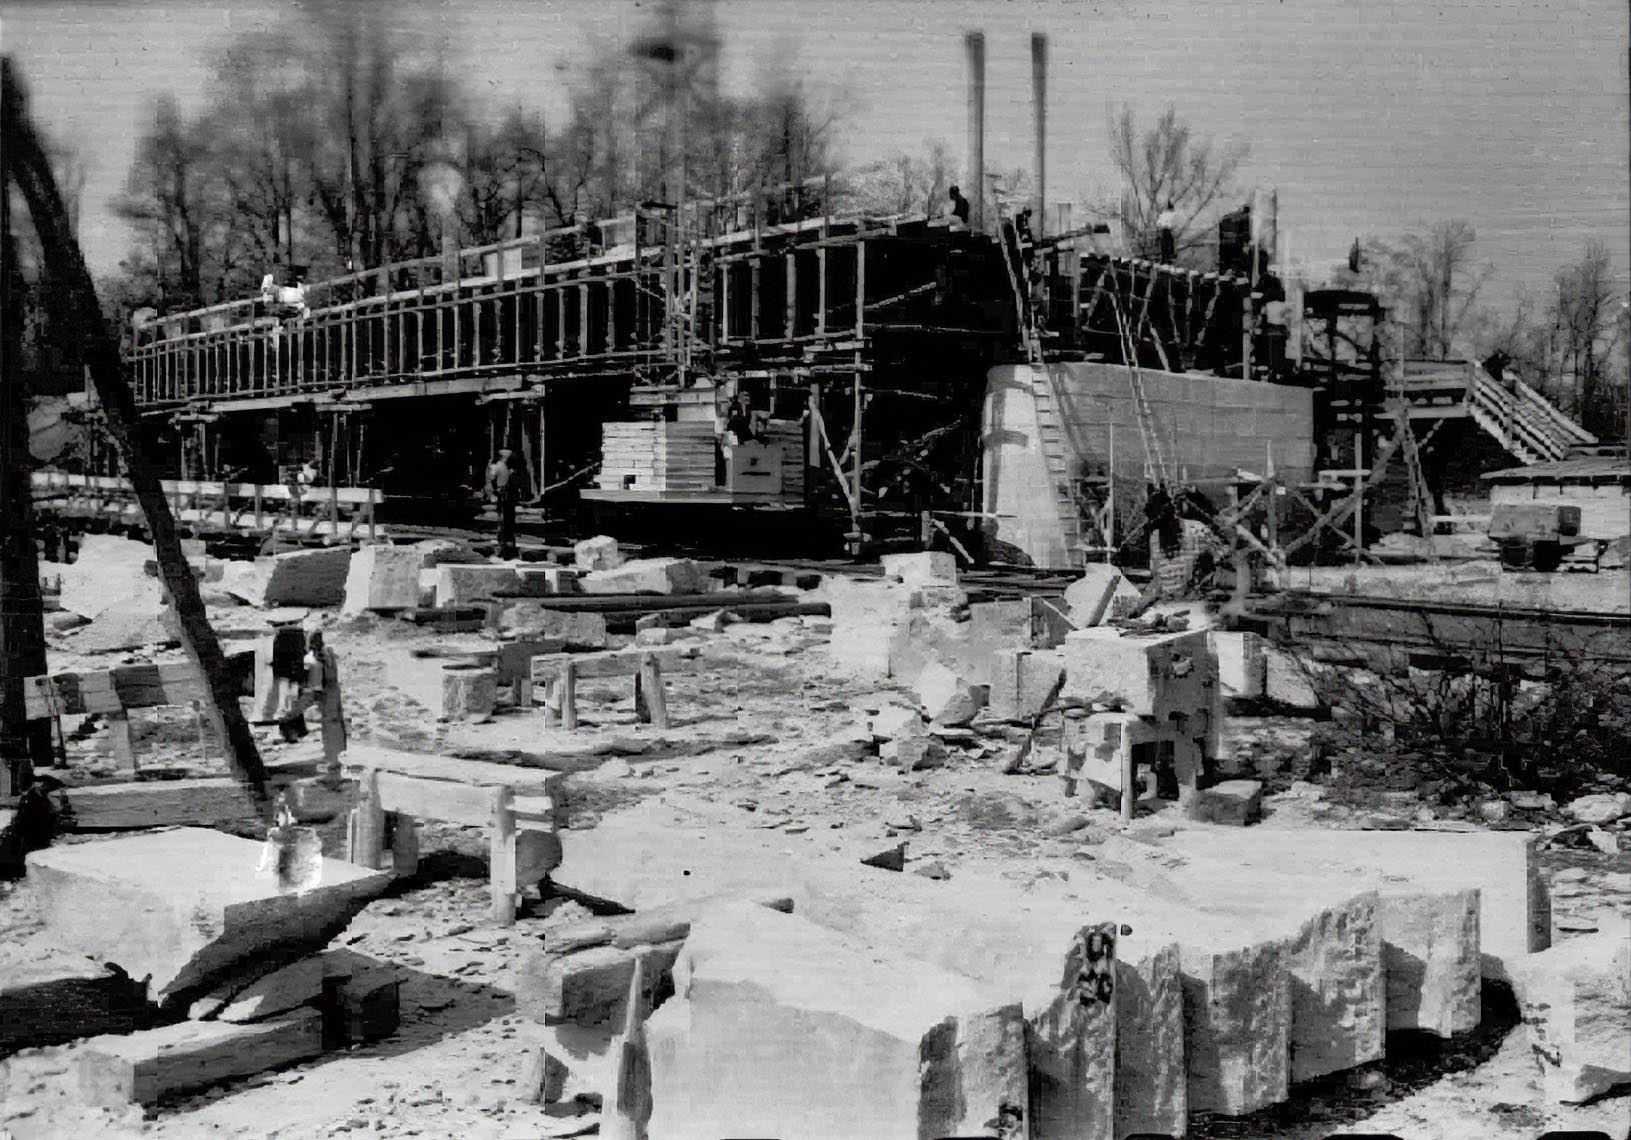 ​Im Rahmen des Baus einer Südtangente für den Mittleren Ring wurde die Brücke 1953 von Dywidag neu errichtet. Dabei konnten die Pfeiler und Widerlager der alten Brücke wiederverwendet werden, wodurch die Kosten des Baus beträchtlich verringert wurden. Durch erstmalige Verwendung von Spannbeton bei einer Münchner Brücke konnte auch der Materialaufwand gering gehalten und trotzdem eine Tragkraft von 60 Tonnen erzielt werden. 1969 wurde die Brücke durch einen Anbau an der Nordseite verbreitert, 1988 durch einen weiteren Anbau an der Südseite.